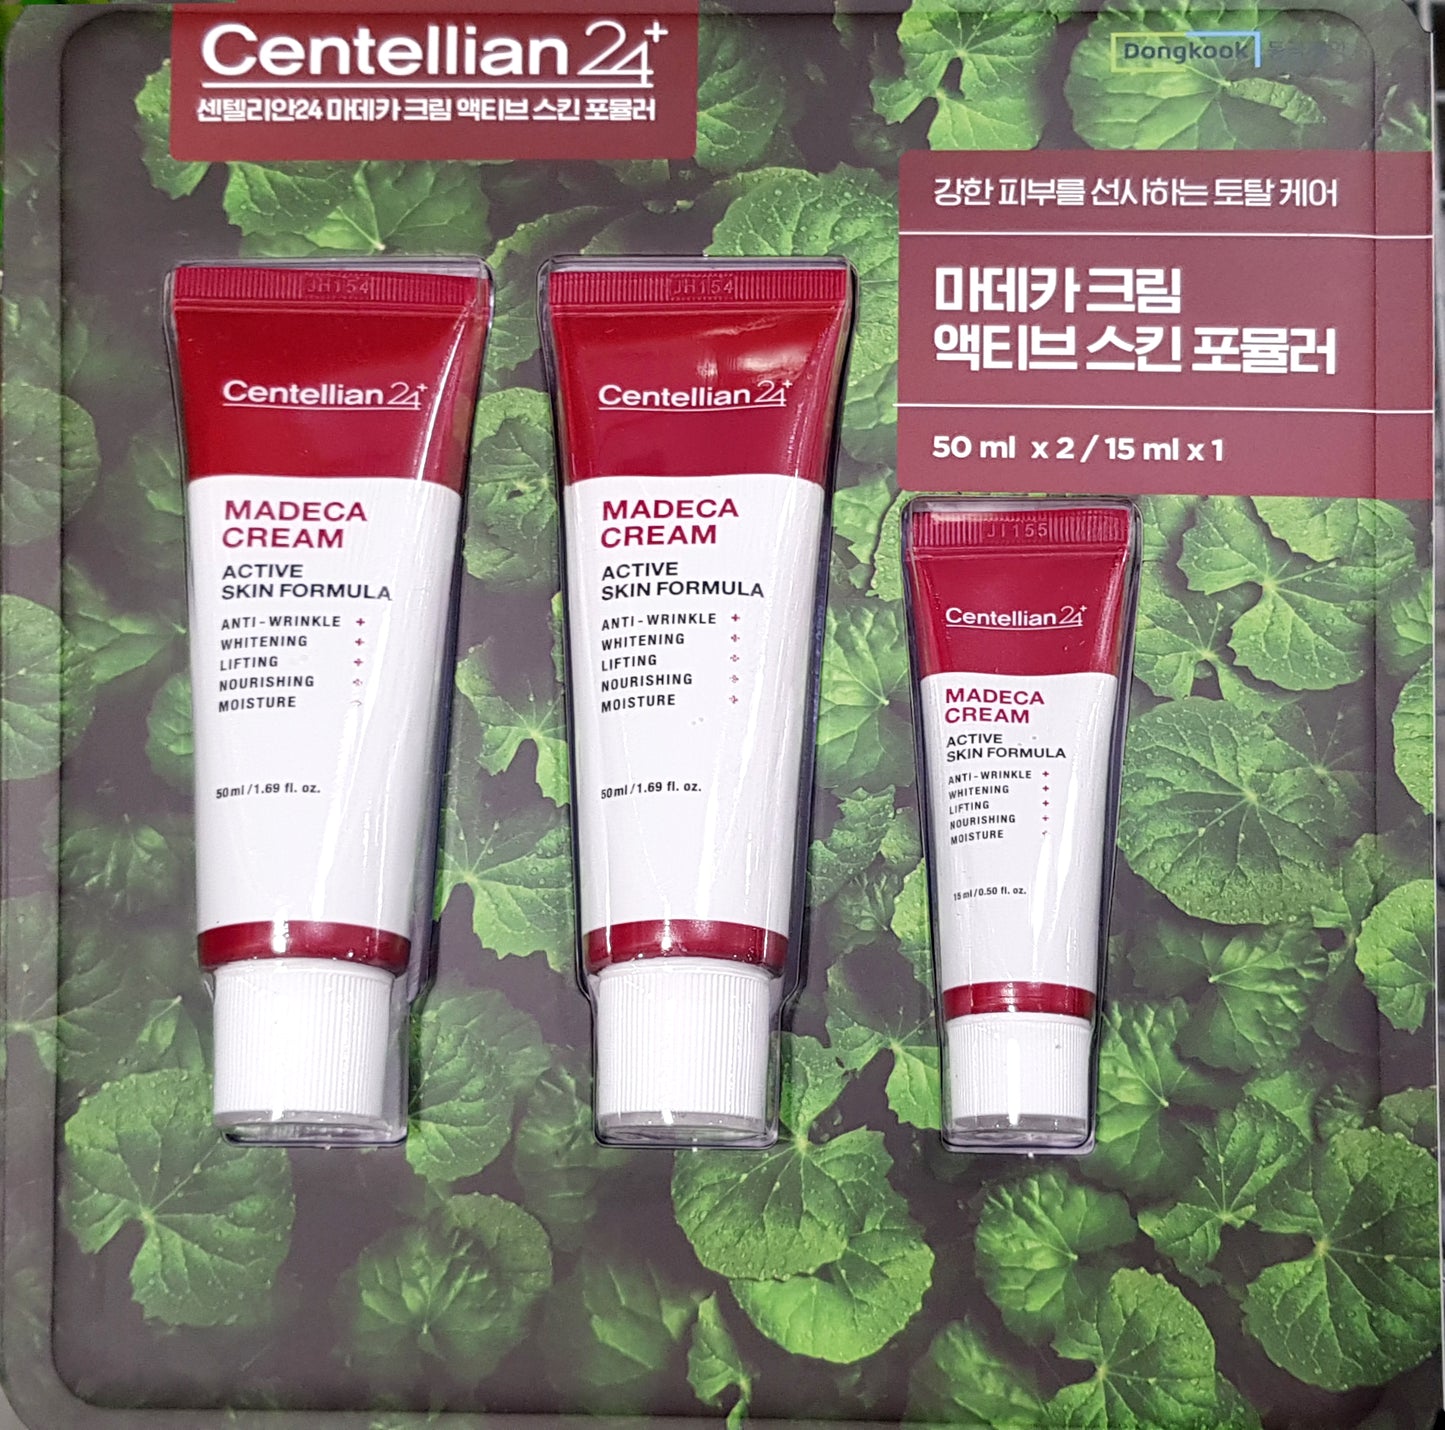 Dongkuk Centellian24 Madeca Cream Active Skin 50ml x 2+15ml x 1/115ml/Anti-aging